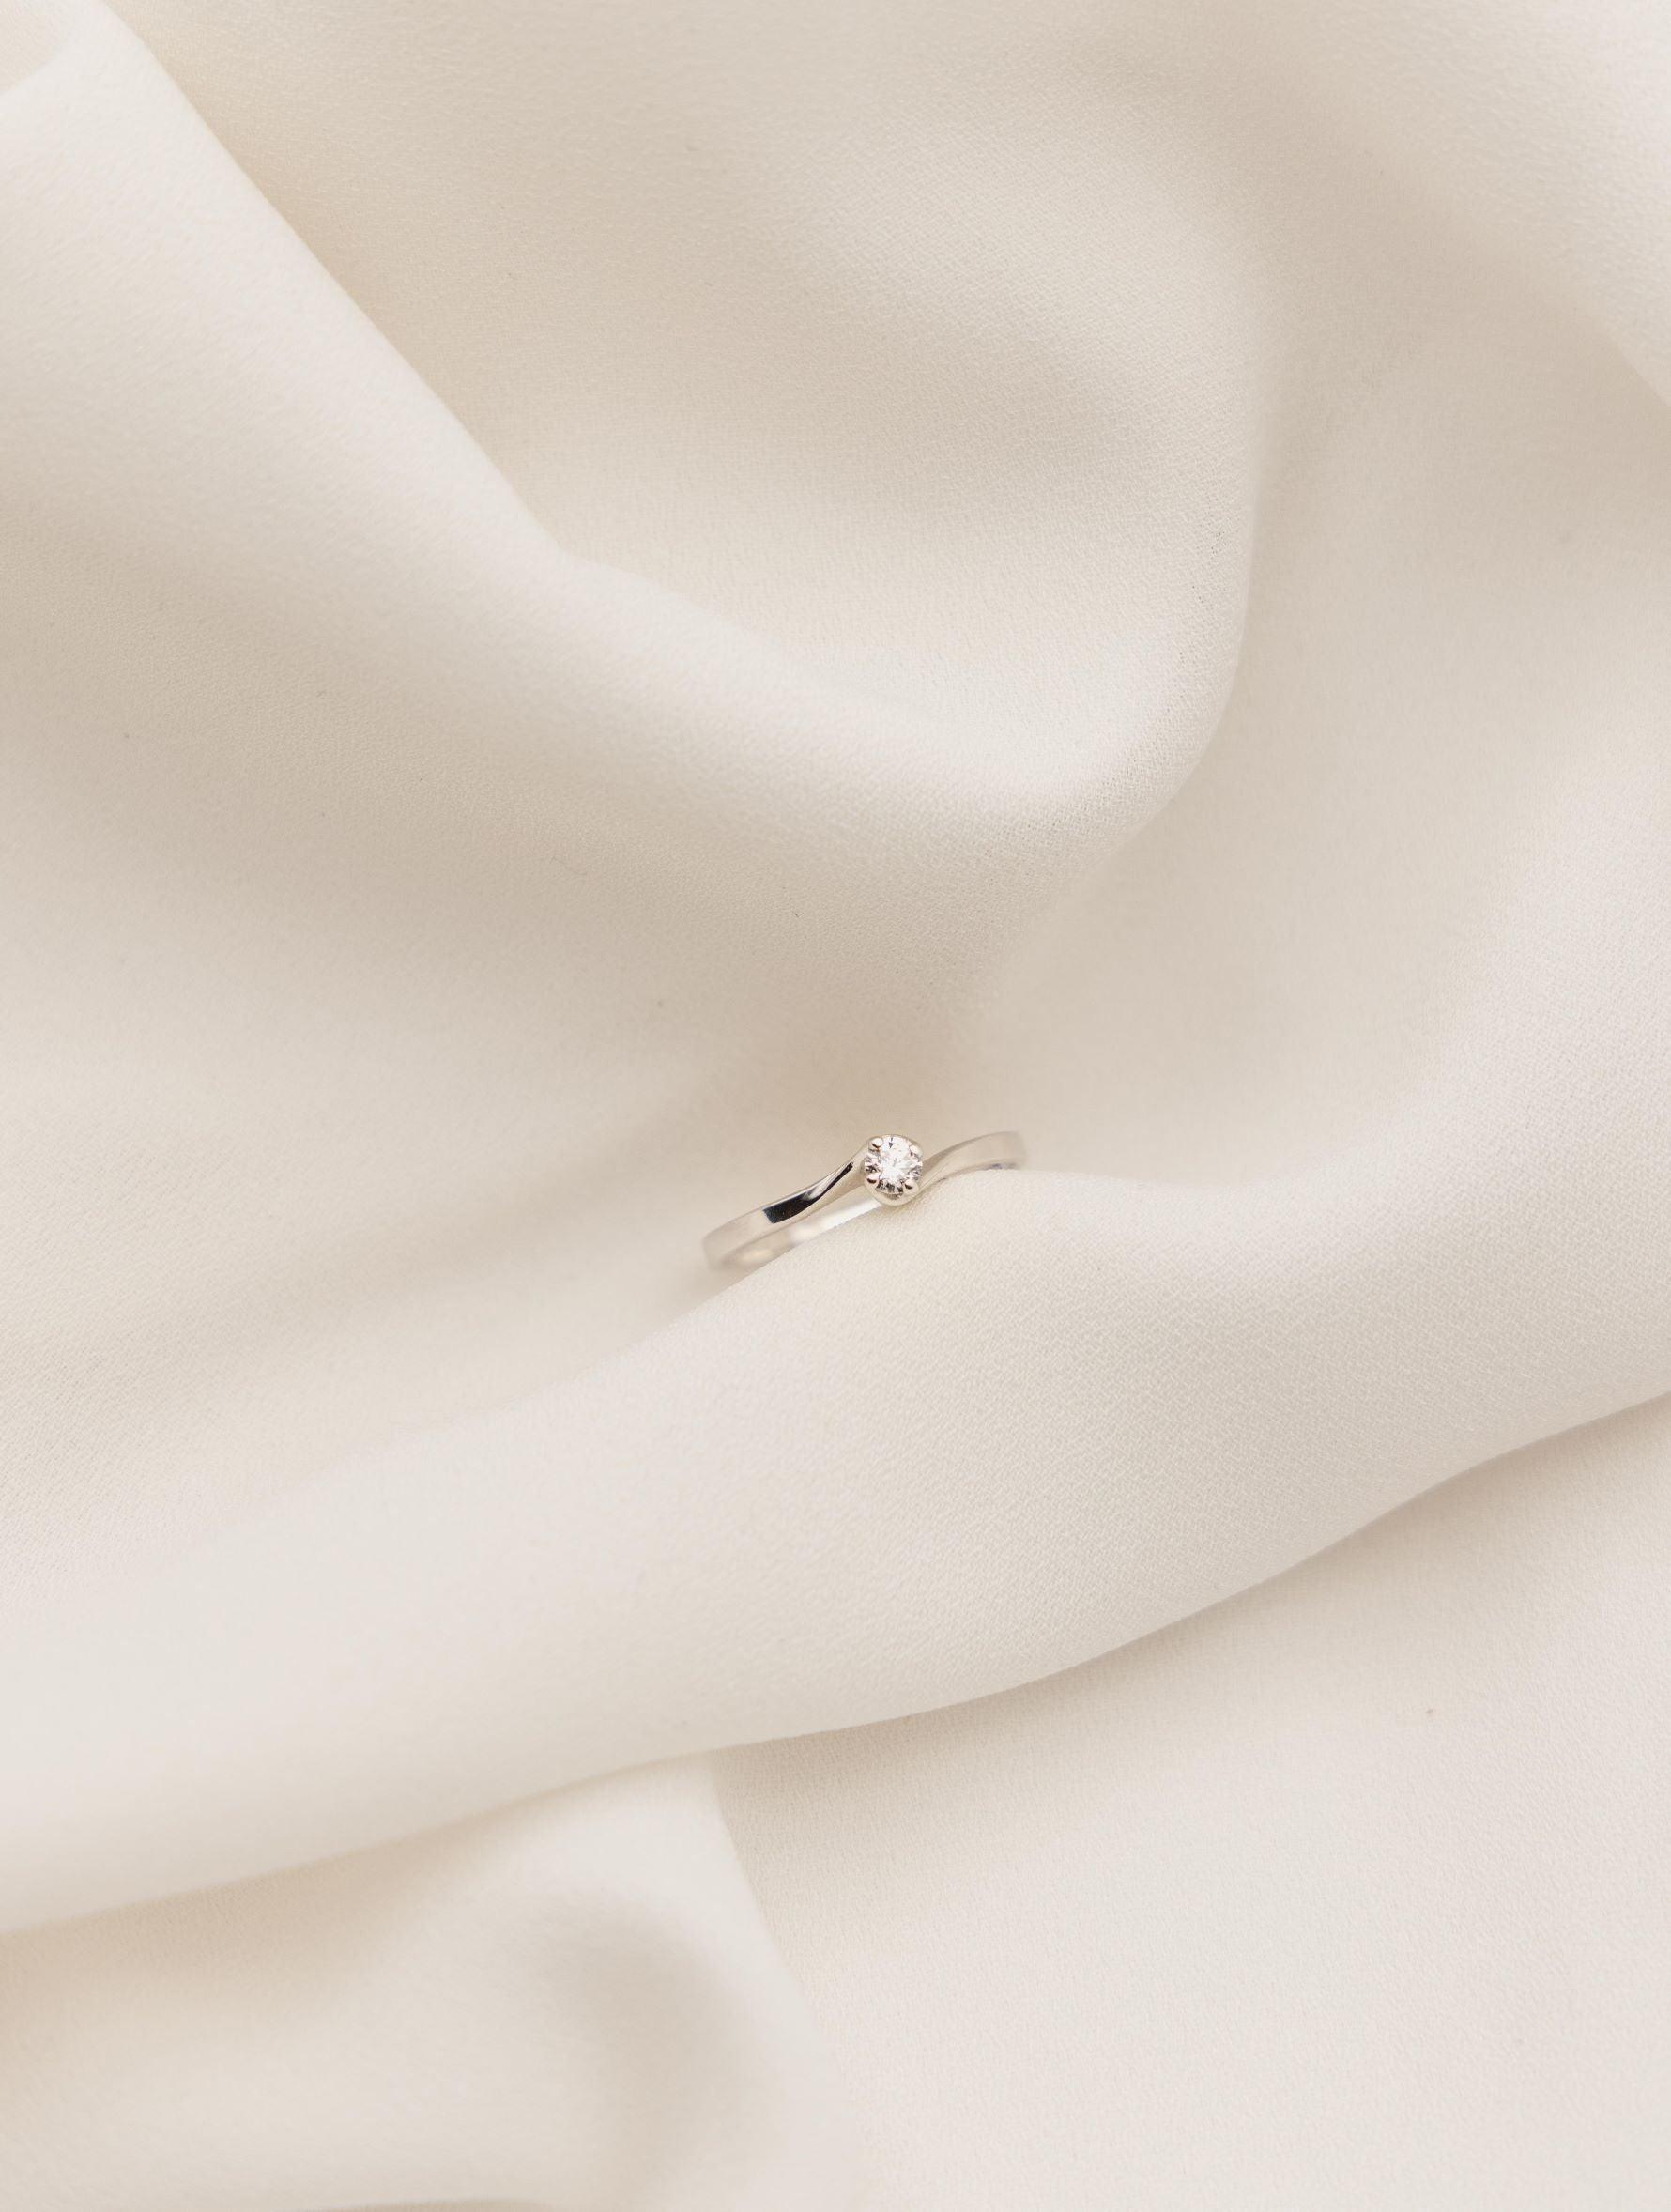 Λευκόχρυσο μονόπετρο δαχτυλίδι με διαμάντι και καστόνι που αγκαλιάζει την πέτρα σε σχήμα φλόγας, επάνω σε λευκό μετάξι.